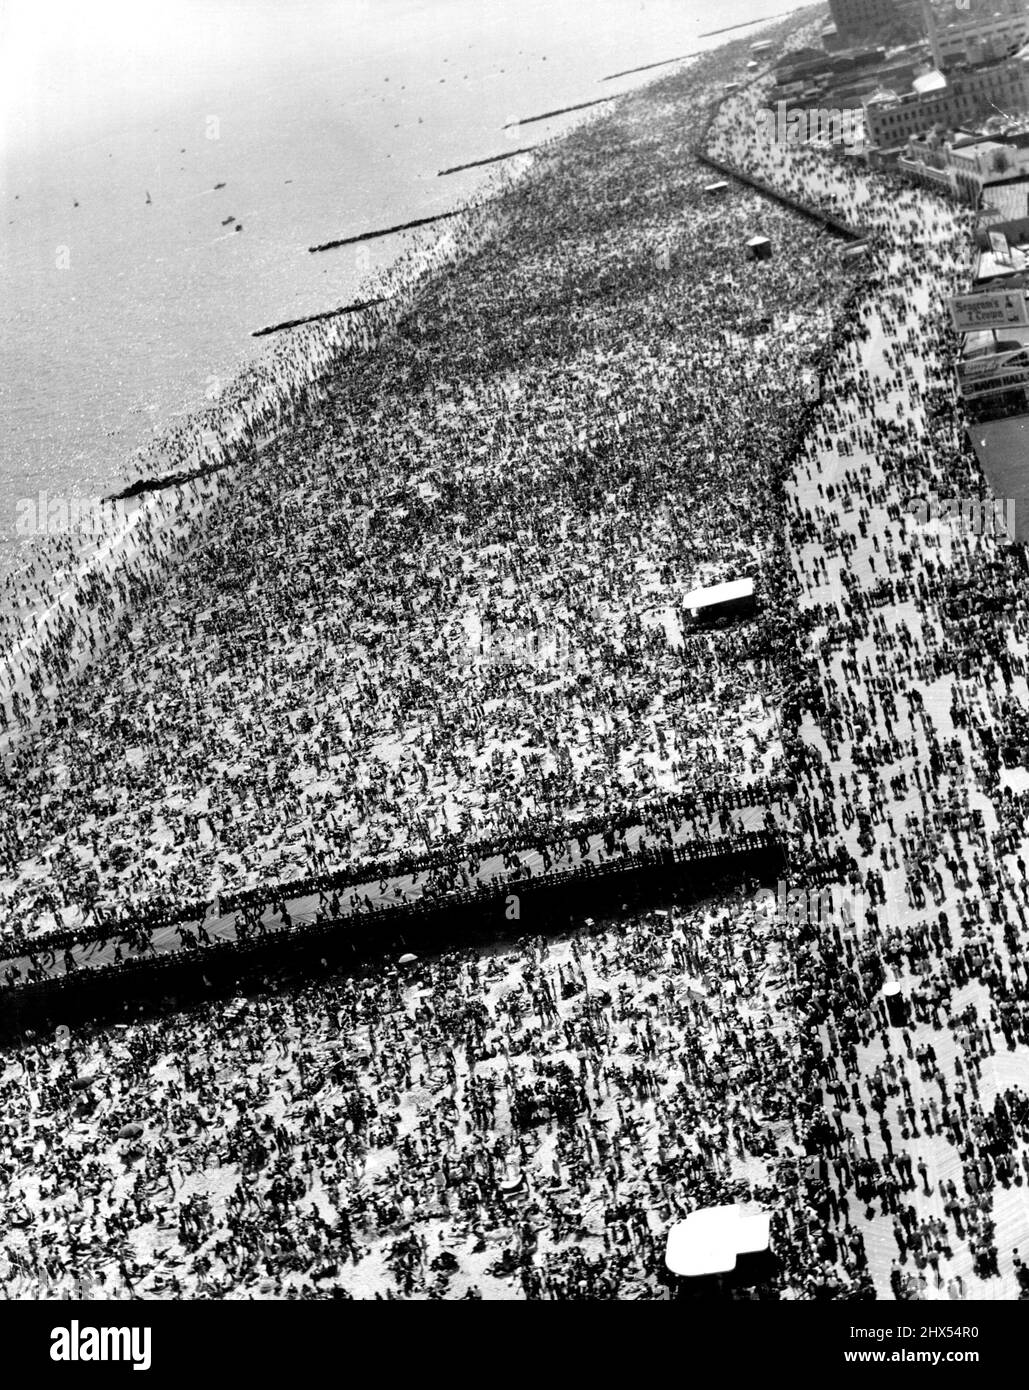 Coney Island - New Yorks fabelhafter Spielplatz -- Coney Island, mit seinen Sandstränden und Vergnügungsparks, ist nur 14 km mit der U-Bahn vom Herzen von New York entfernt und hat ausnahmslos einen überfüllten Look. Wie seine Pendants in anderen Ländern wirkt sie als Magnet für die Tausenden von Menschen, die die meiste Zeit ihrer Tage in der Großstadt leben und arbeiten. Es wurde geschätzt, dass an Feiertagen und an Wochenenden über 200.000 Menschen an den 4½ Meilen Strand strömen. Im Hochsommer schwebt die Temperatur um die 100-Grad-Marke, und die Promenaden werden dann mit Menschen gefüllt, die die Hitze auf dem nicht aushalten können Stockfoto